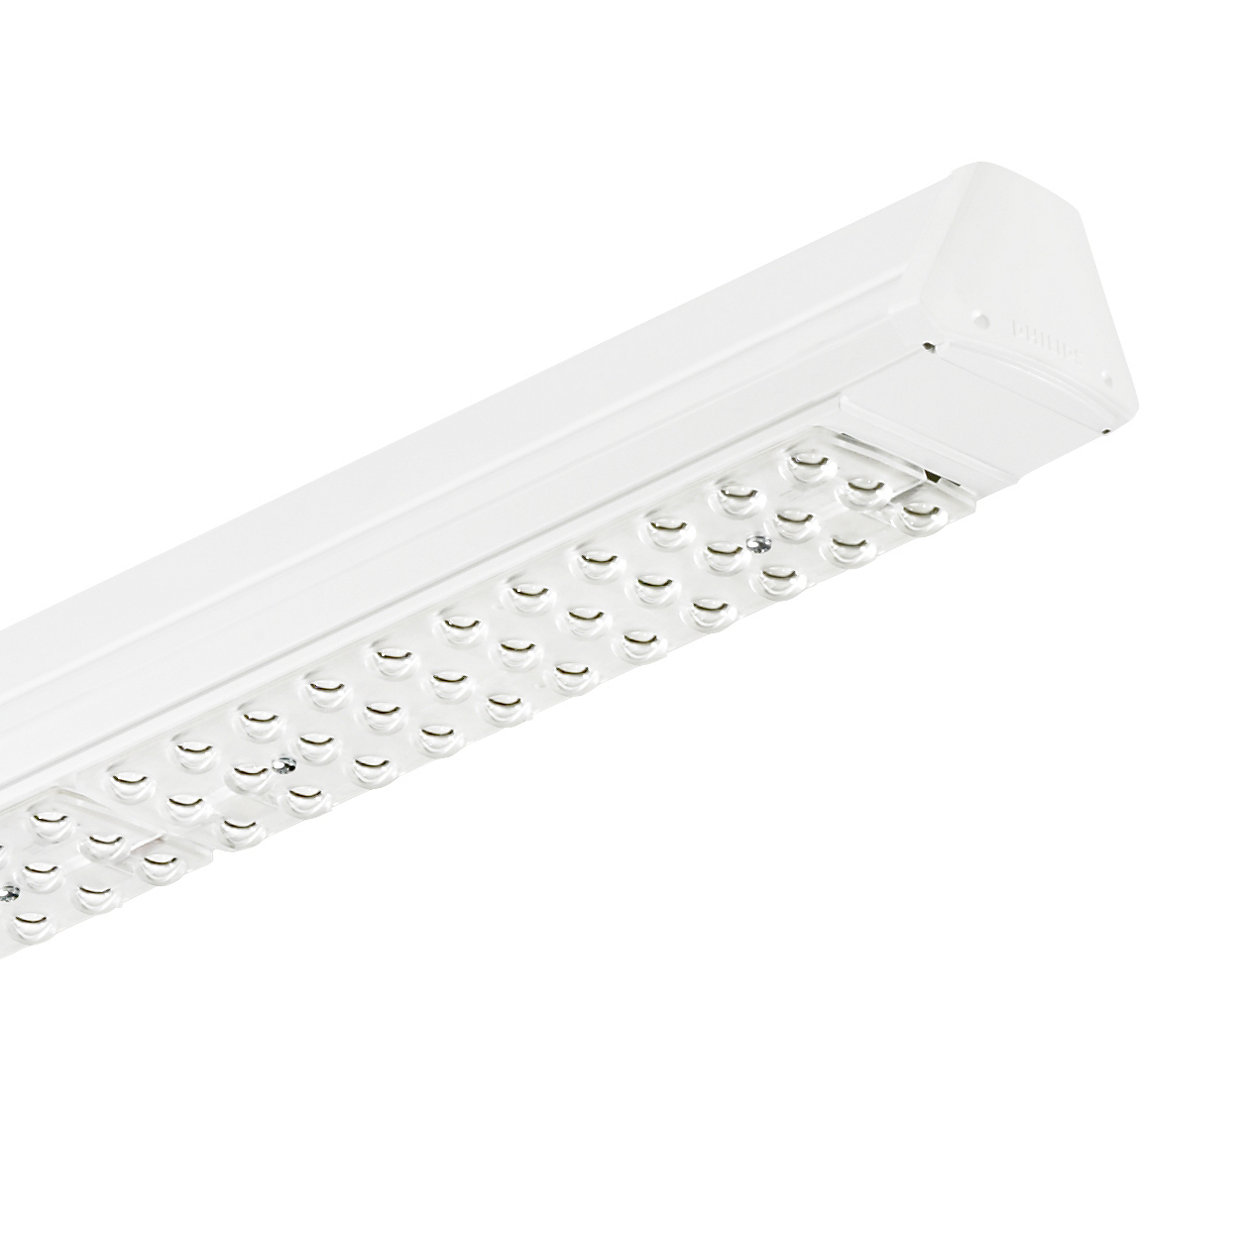 Maxos LED: solución innovadora y flexible que ofrece un rendimiento lumínico ideal